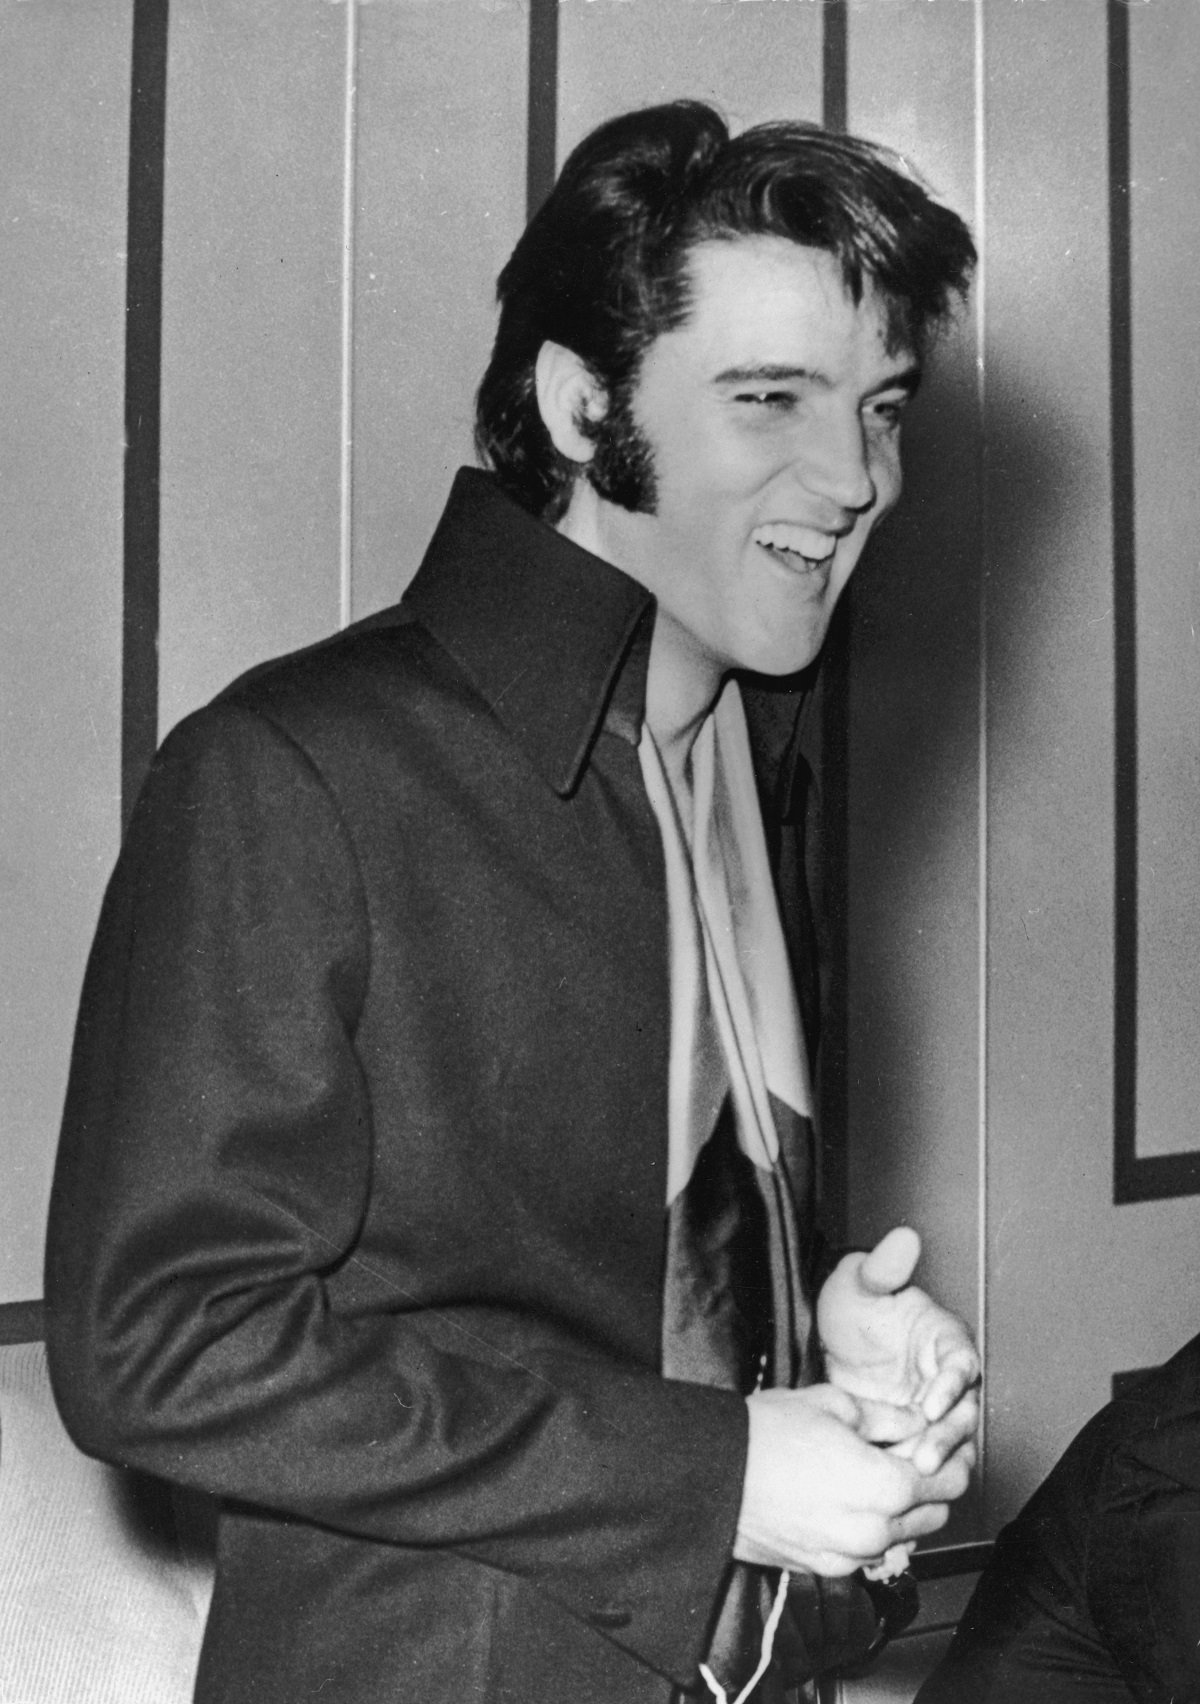 Elvis Presley in 1972 